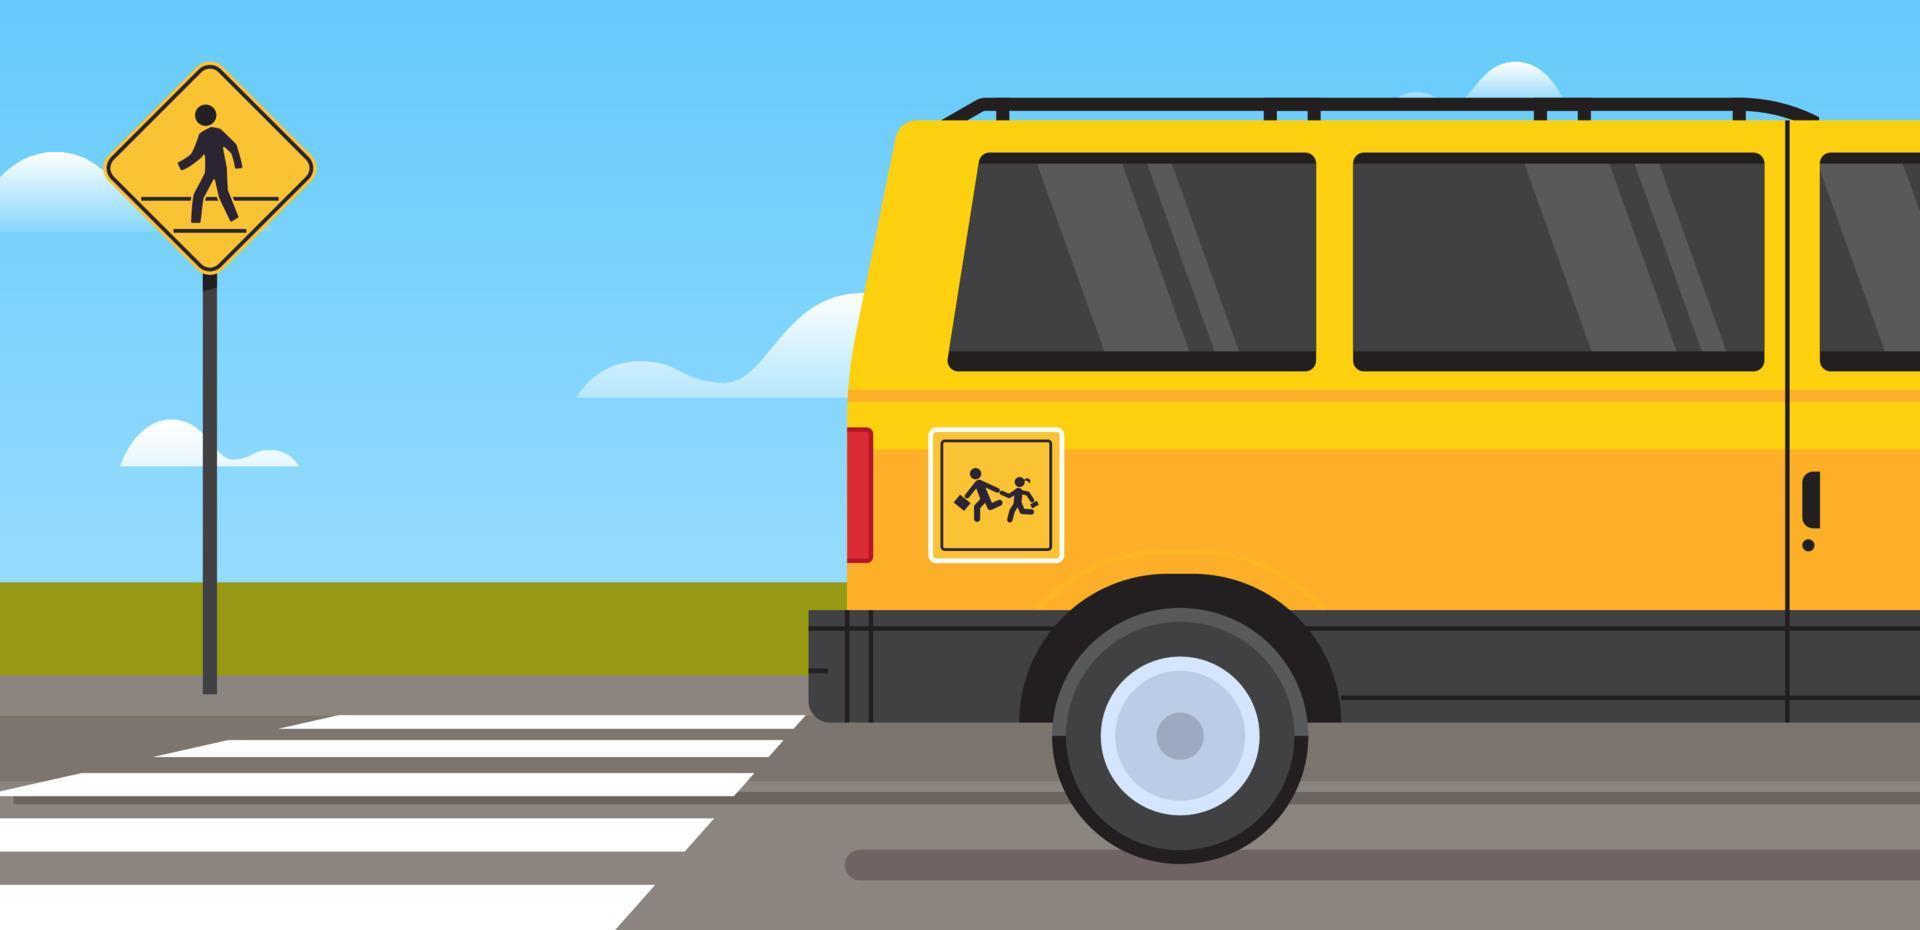 transport par autobus scolaire jaune et retour à l'école élèves enfants transport concept de passage pour piétons illustration vectorielle plane horizontale. vecteur